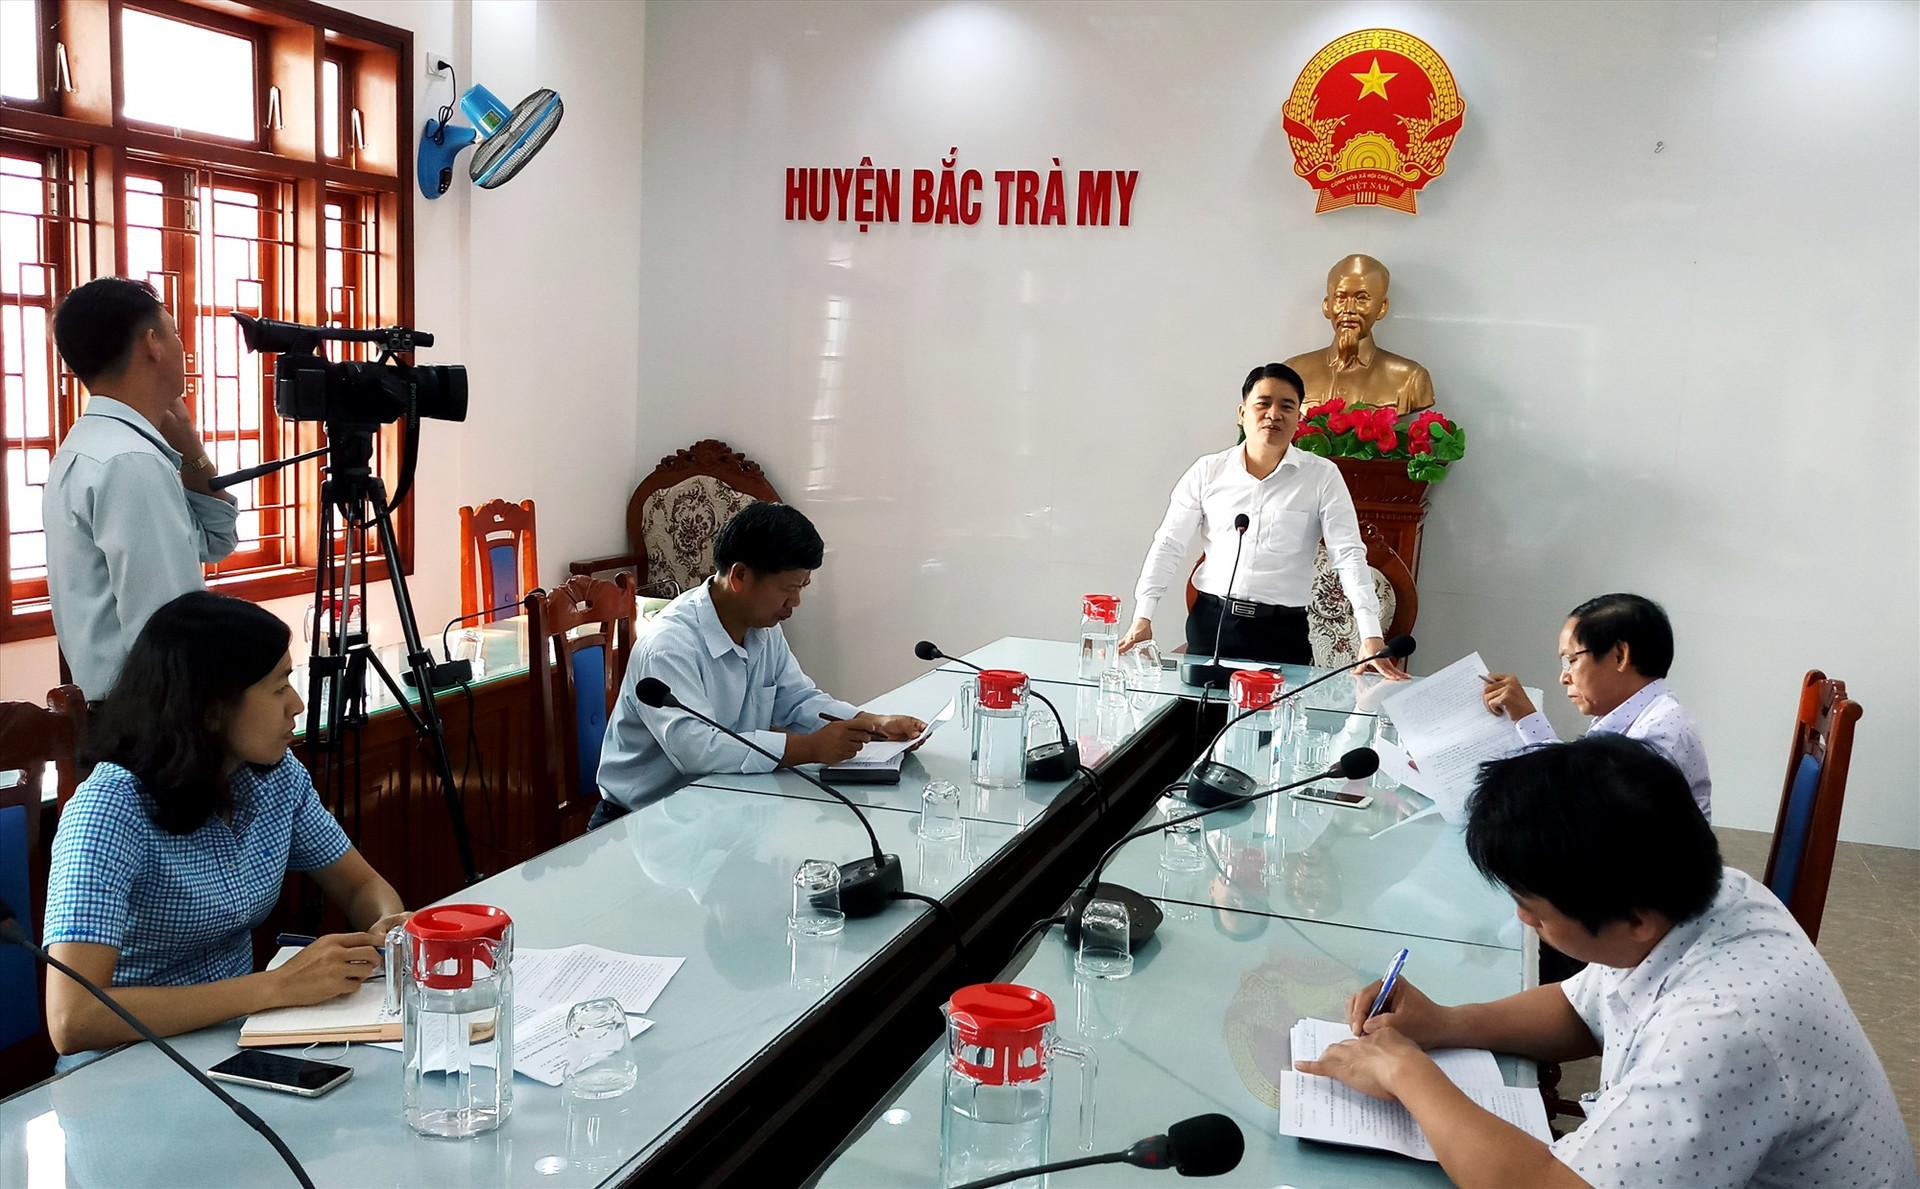 Phó Chủ tịch UBND tỉnh Trần Văn Tân phát biểu tại buổi làm việc. Ảnh: A.N